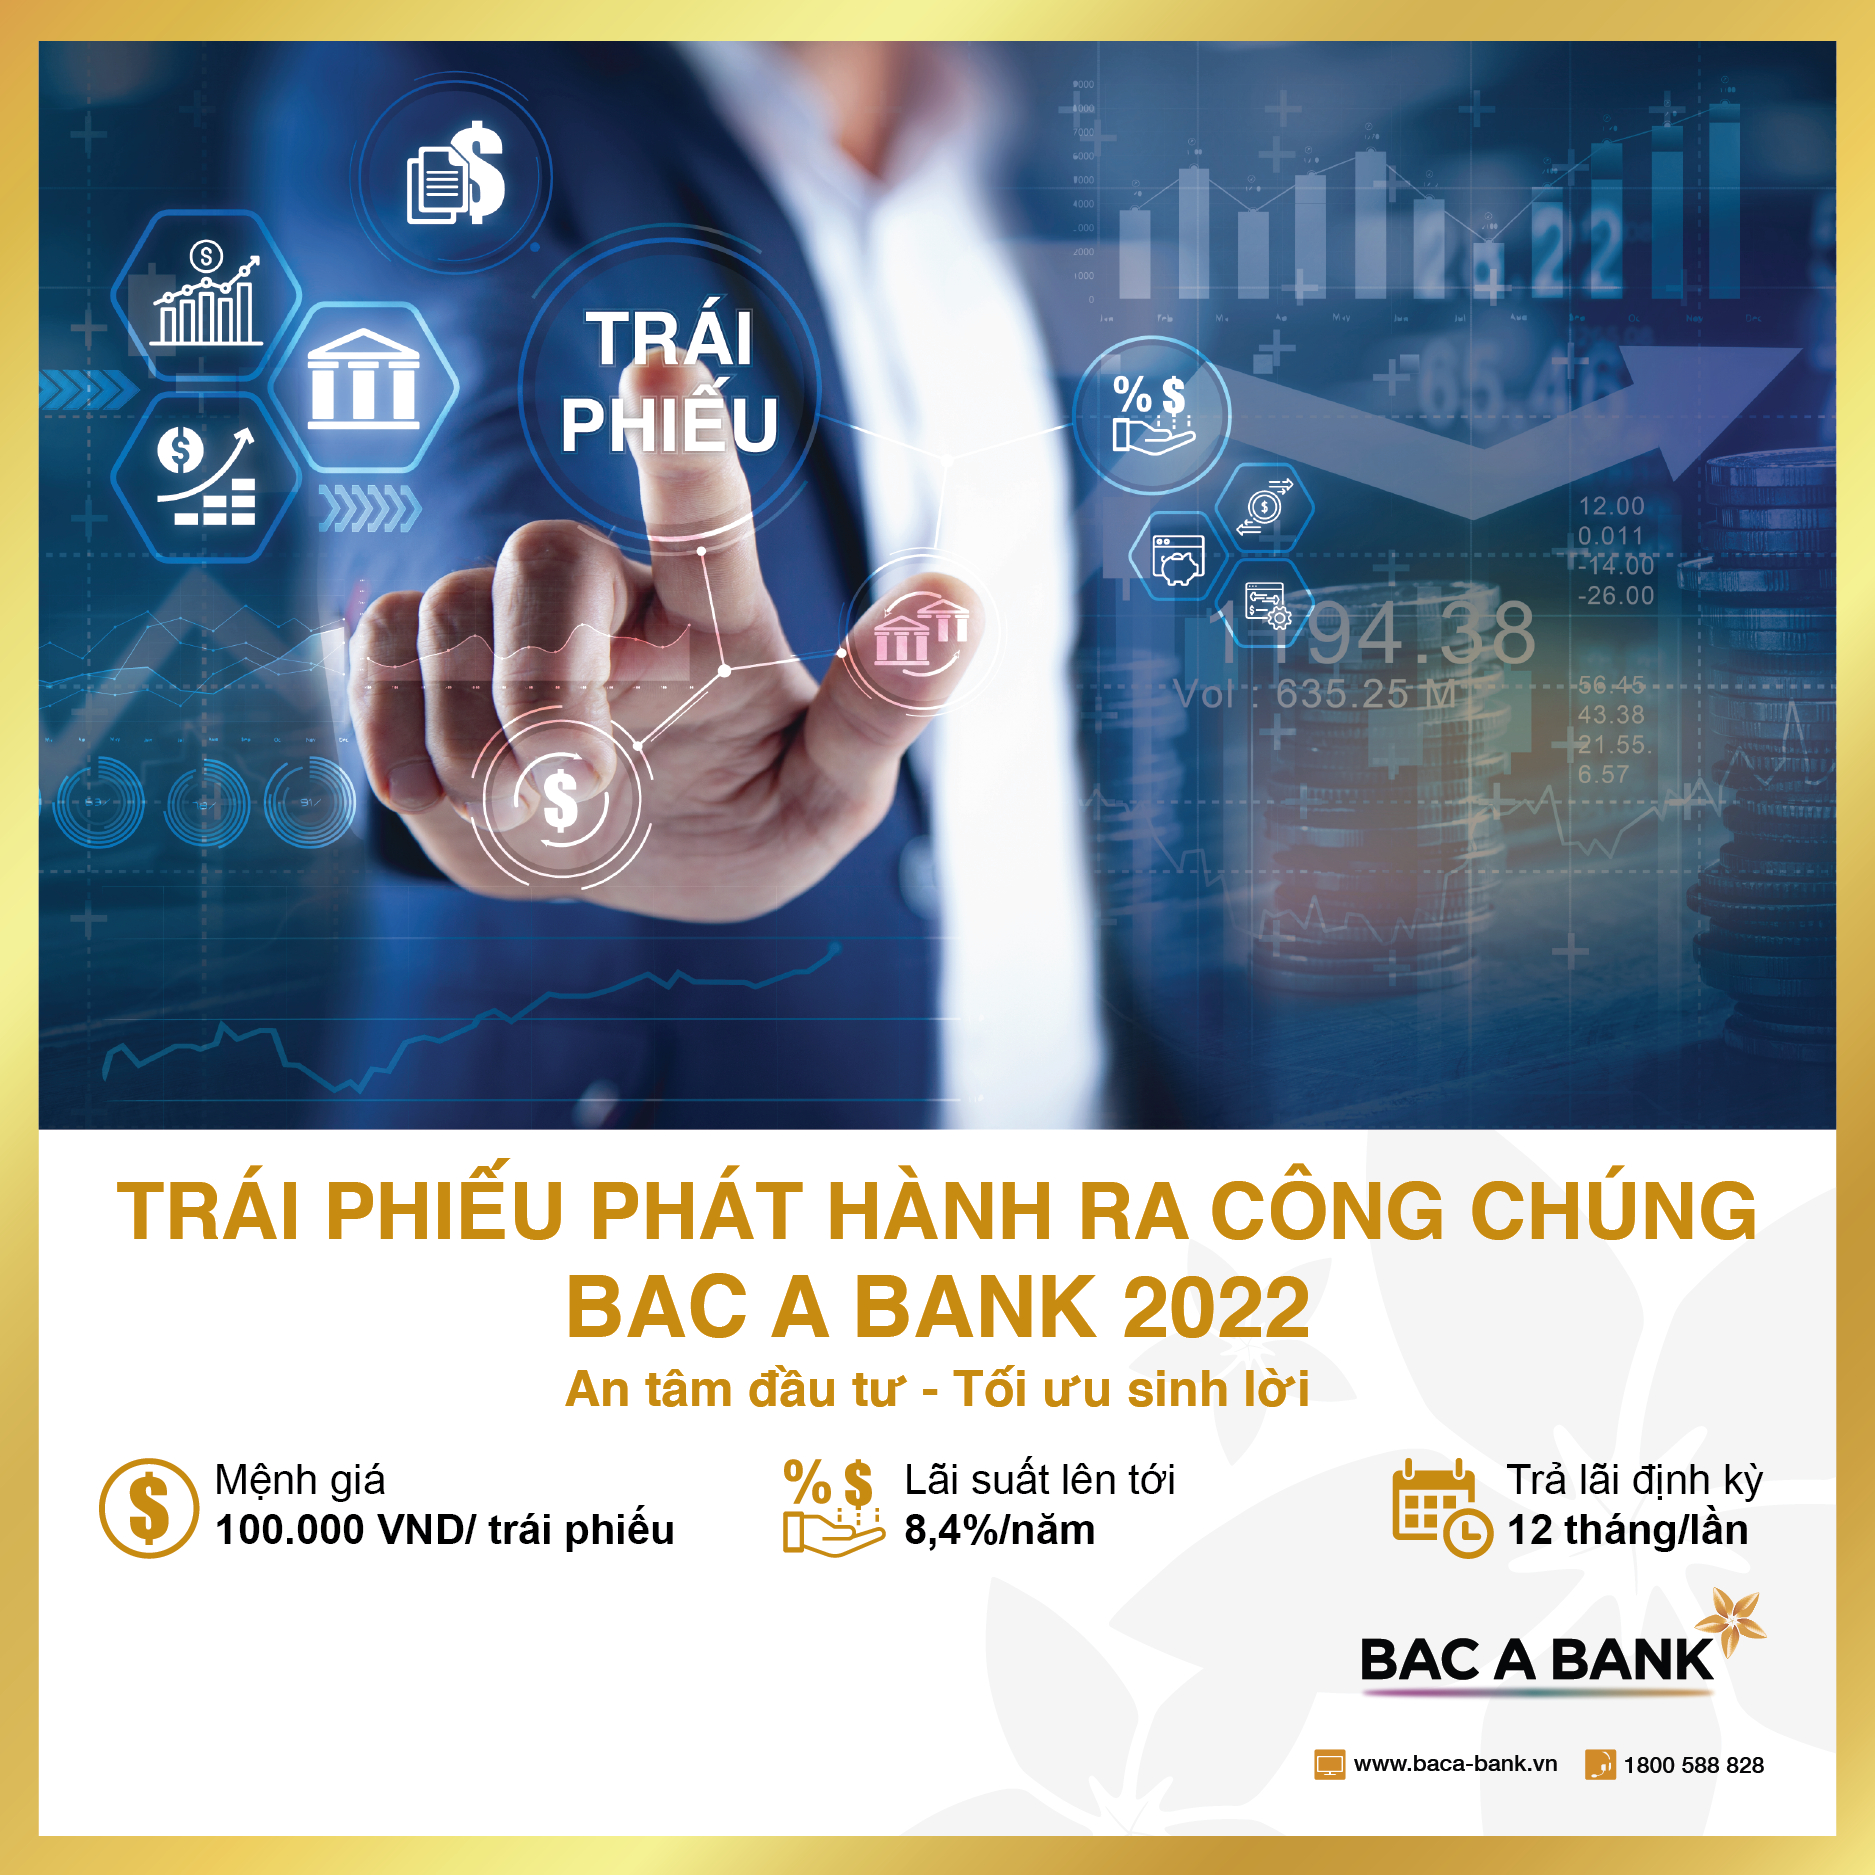 bac a bank chinh thuc chao ban 16 trieu trai phieu phat hanh ra cong chung dot 1 hinh 1